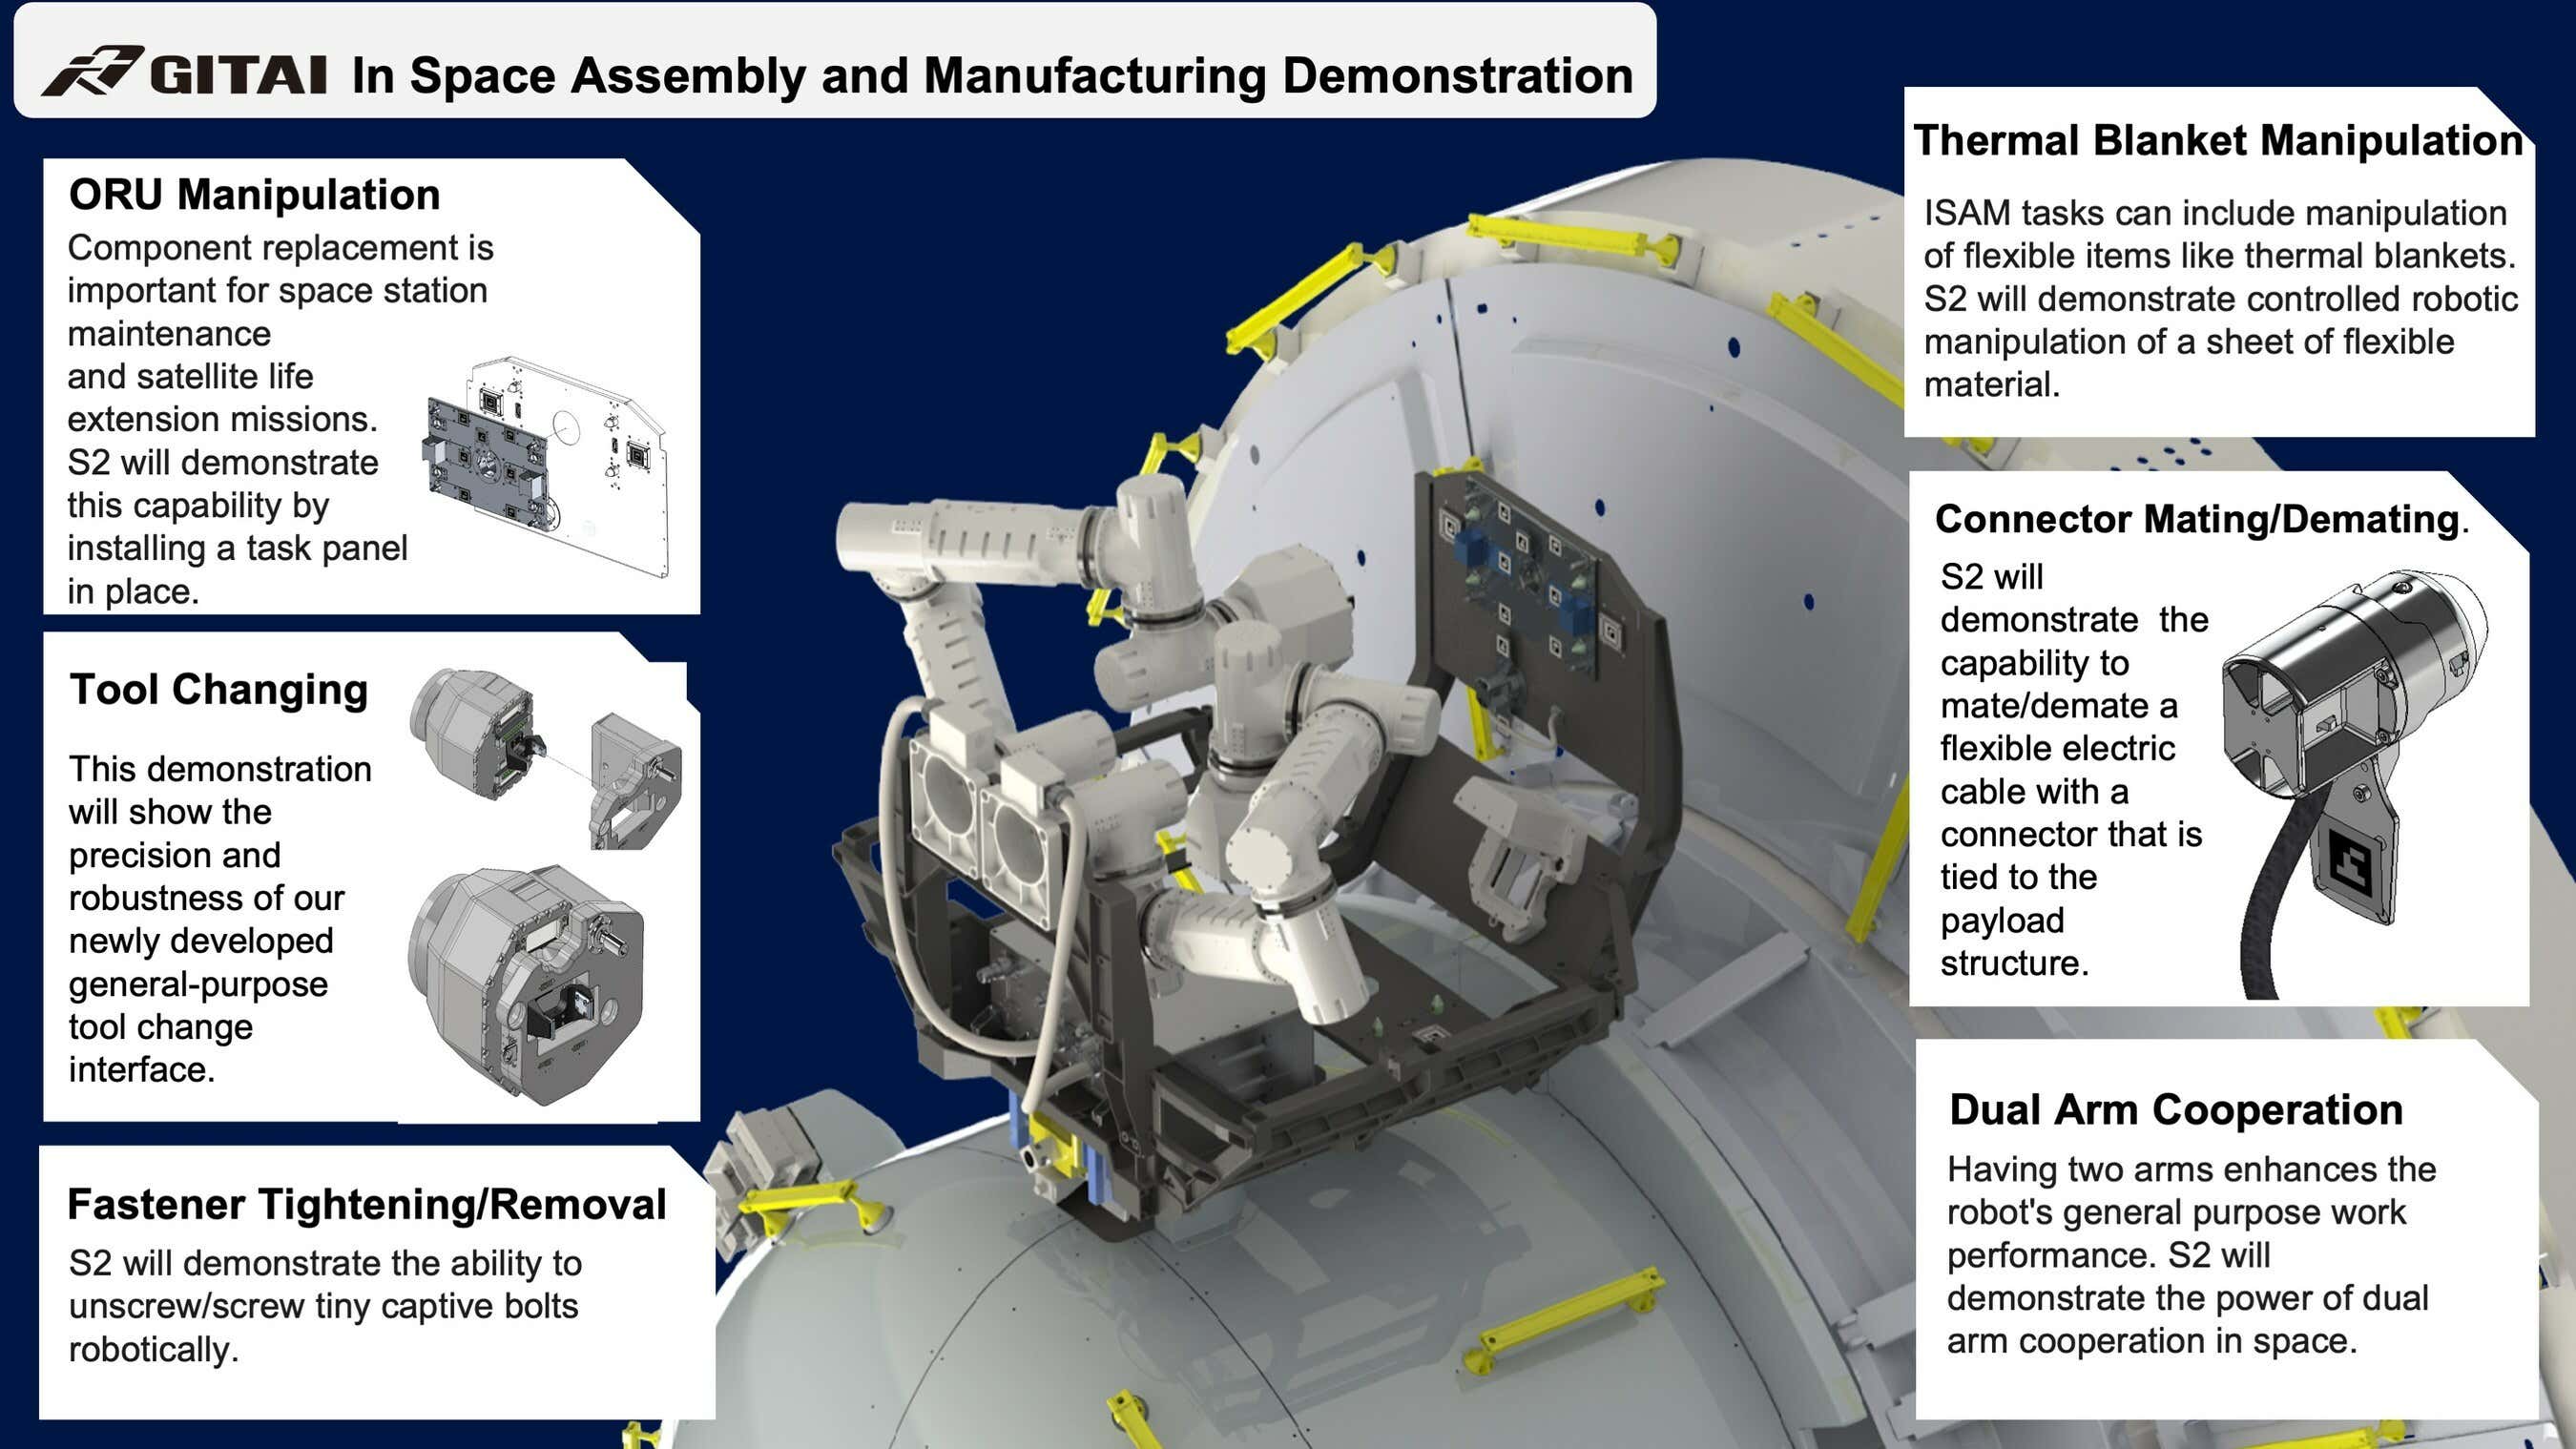 ISS'ye Yeni Bir Çift Ürpertici Robot Kolu Geliyor başlıklı makalenin resmi